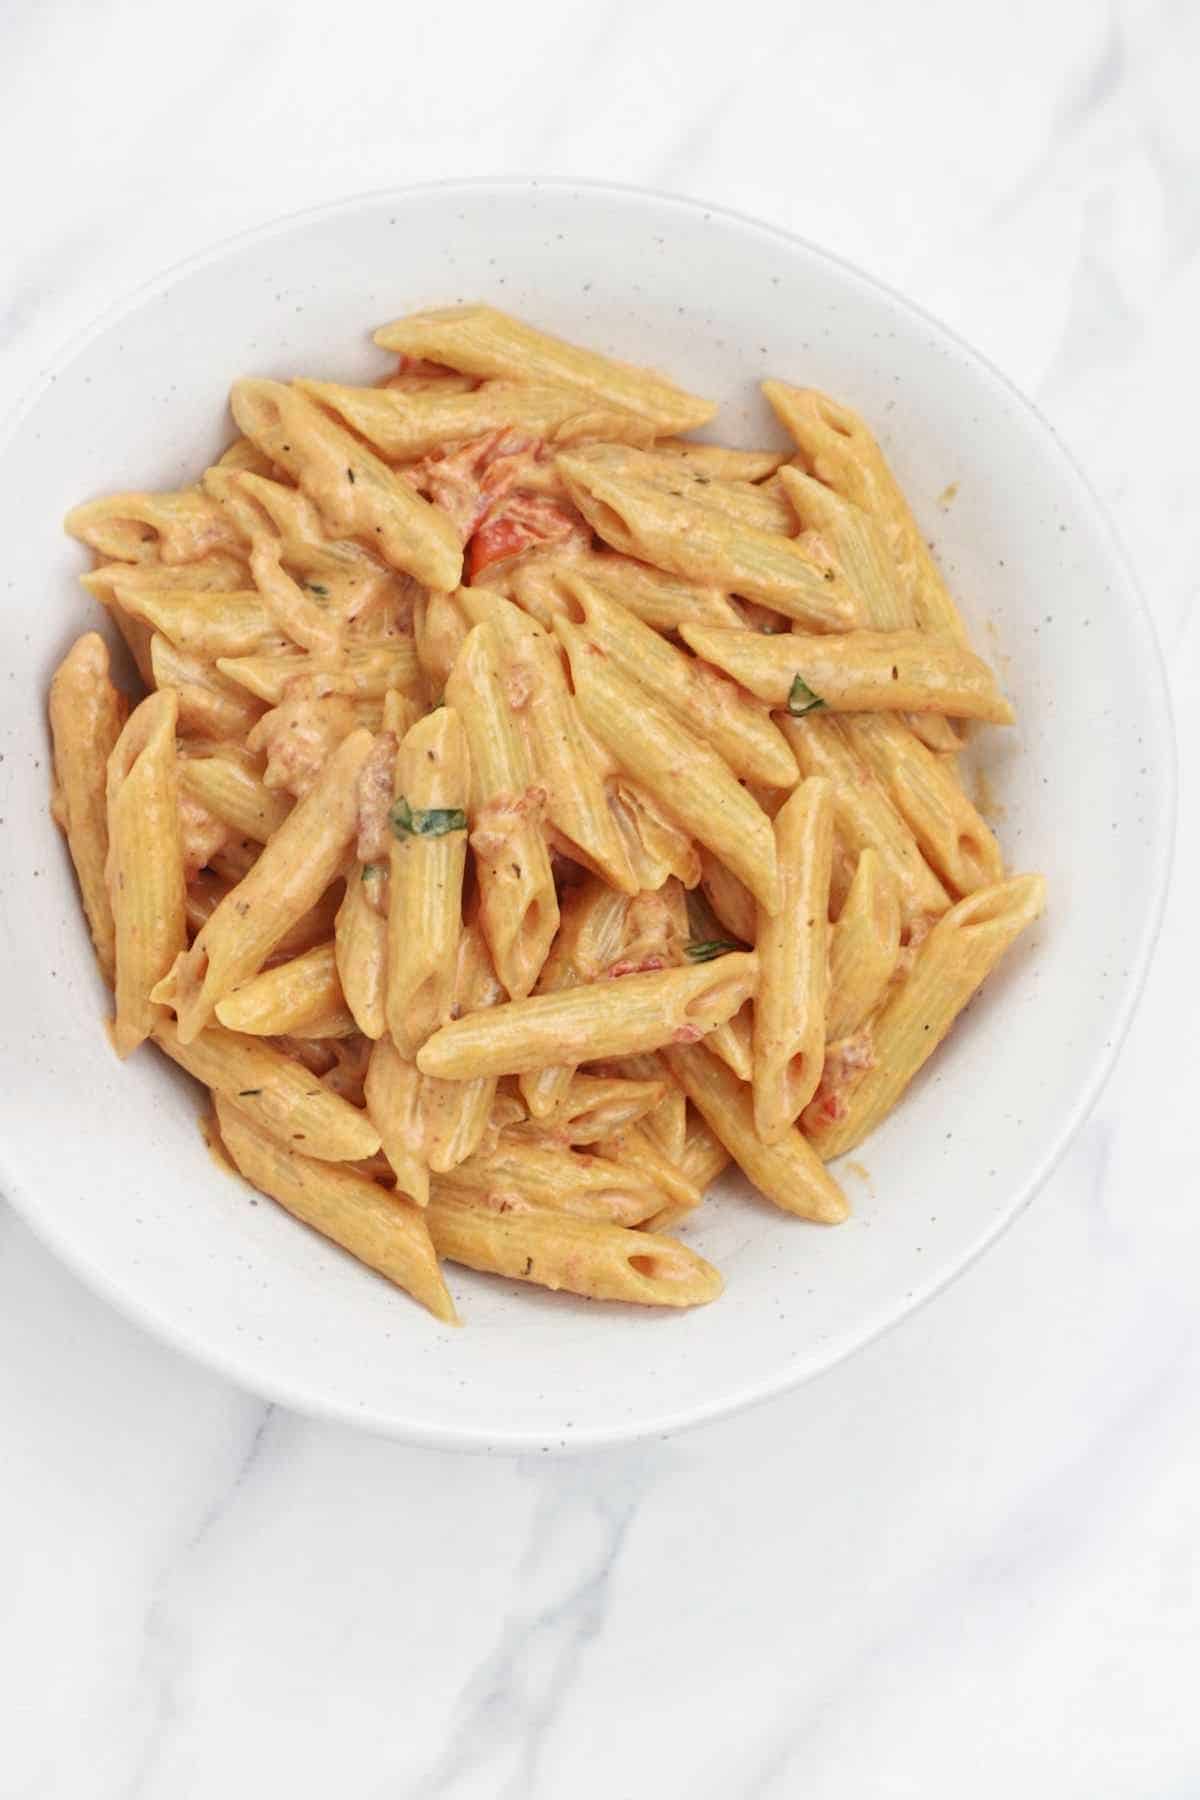 creamy tomato pasta served in a white plate.